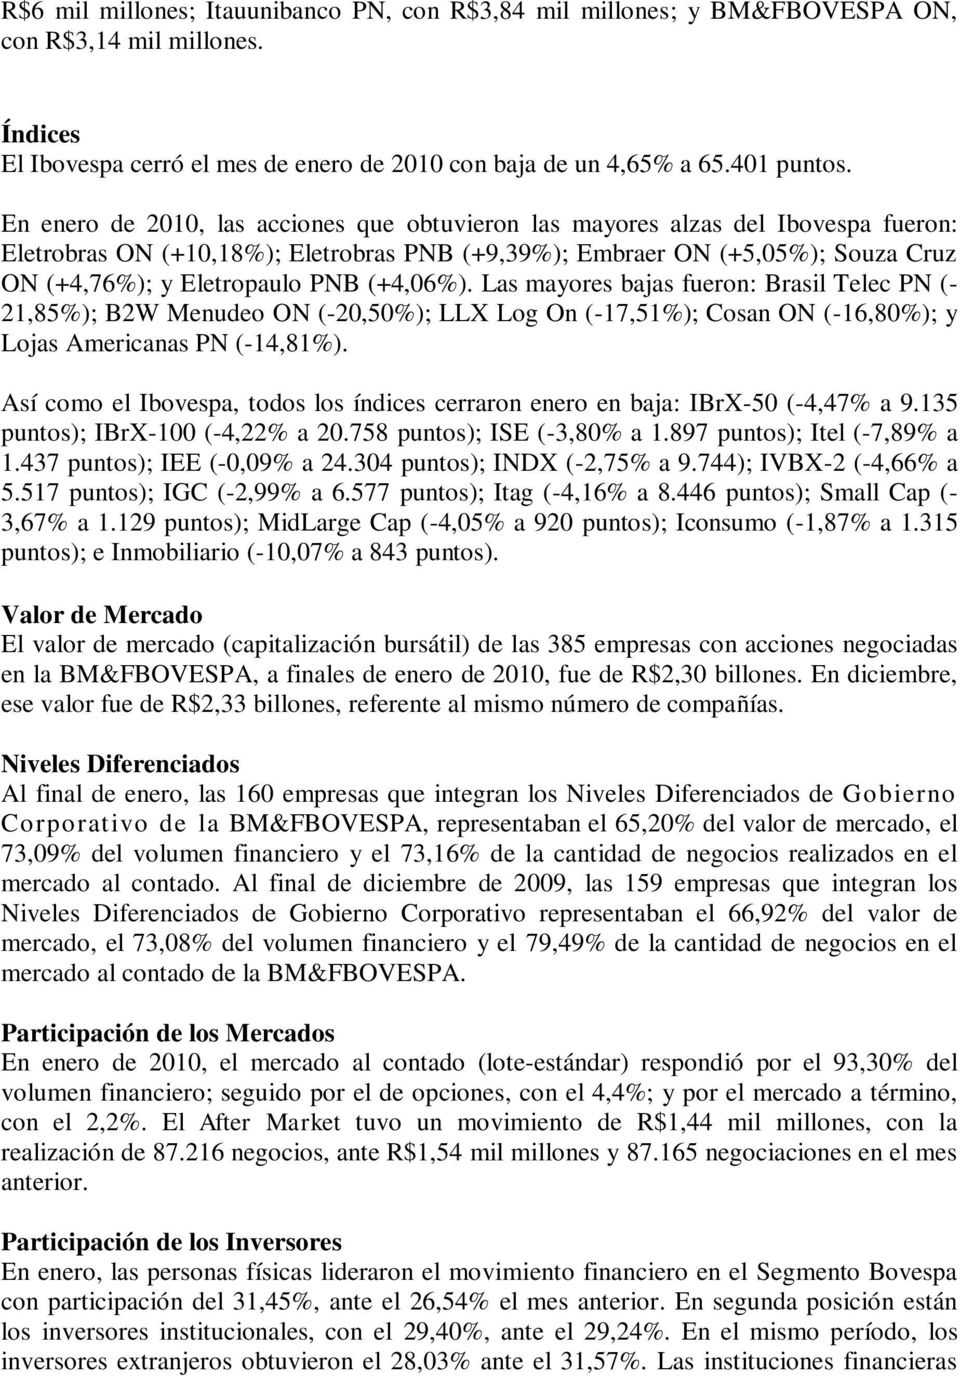 (+4,06%). Las mayores bajas fueron: Brasil Telec PN (- 21,85%); B2W Menudeo ON (-20,50%); LLX Log On (-17,51%); Cosan ON (-16,80%); y Lojas Americanas PN (-14,81%).